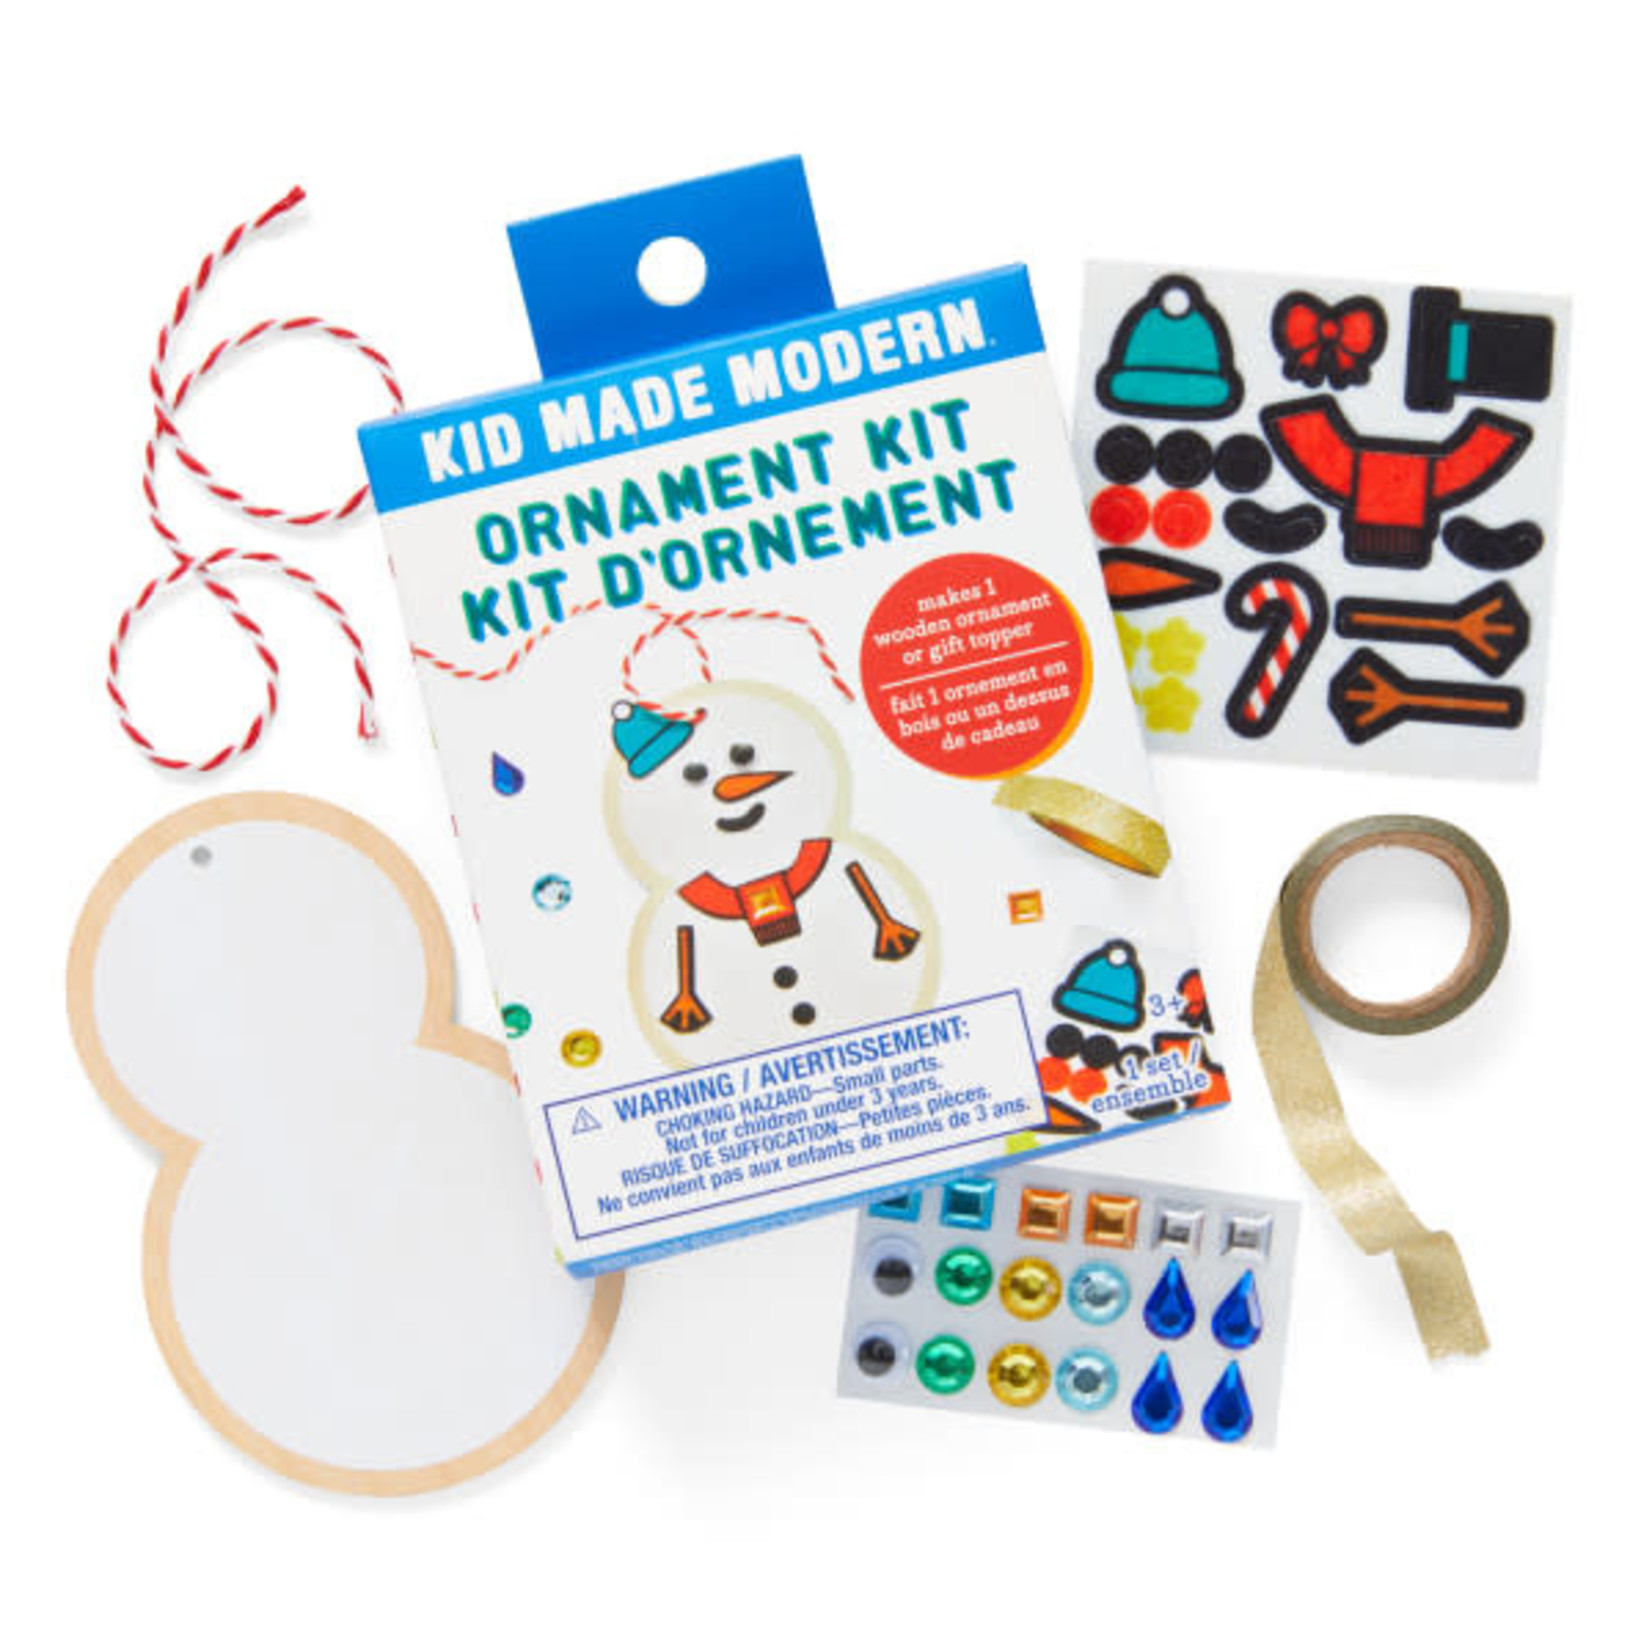 Kid Made Modern snowman ornament kit